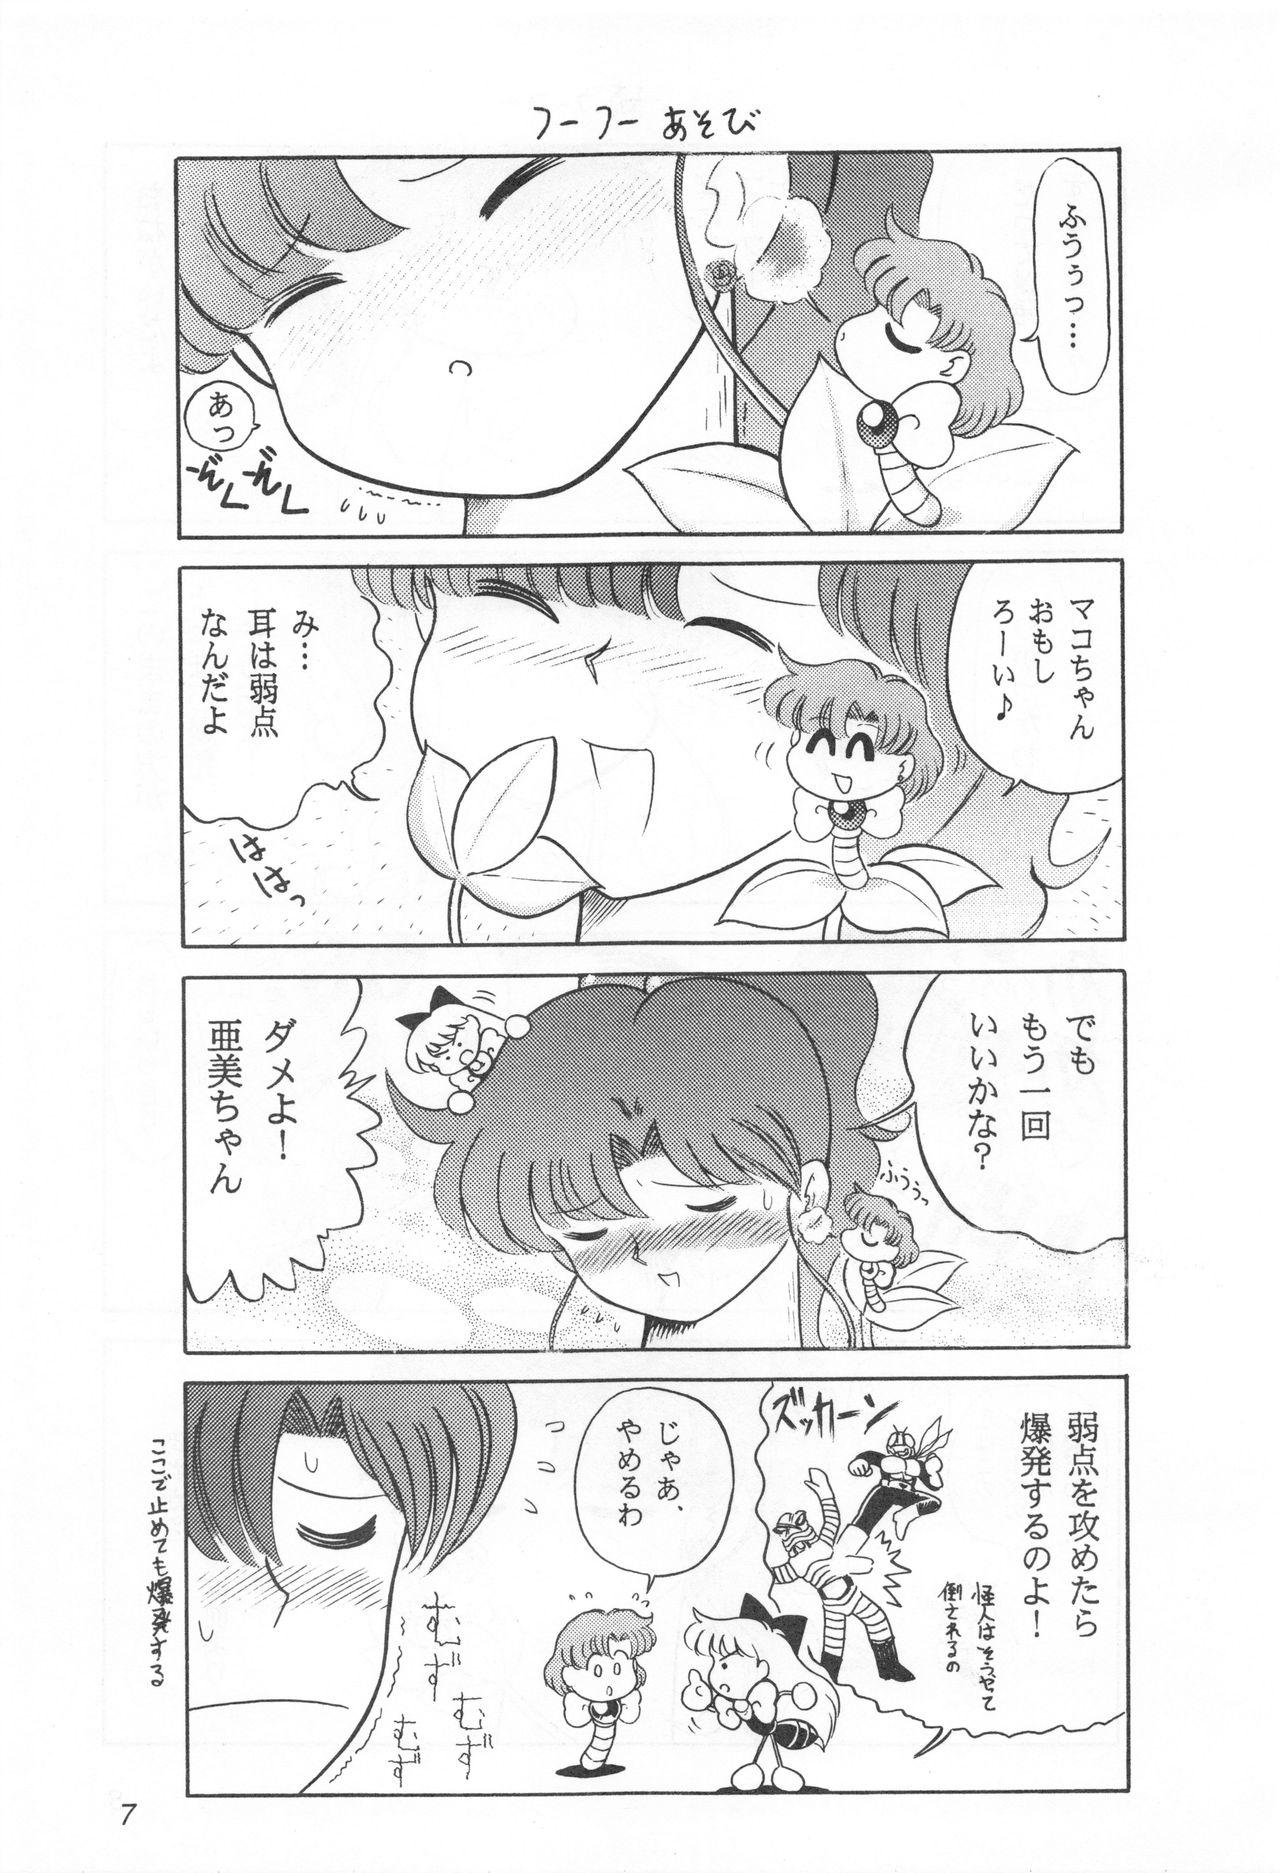 Pink Pussy Mimizu no Ami-chan Vol. 2 - Sailor moon Flash - Page 6